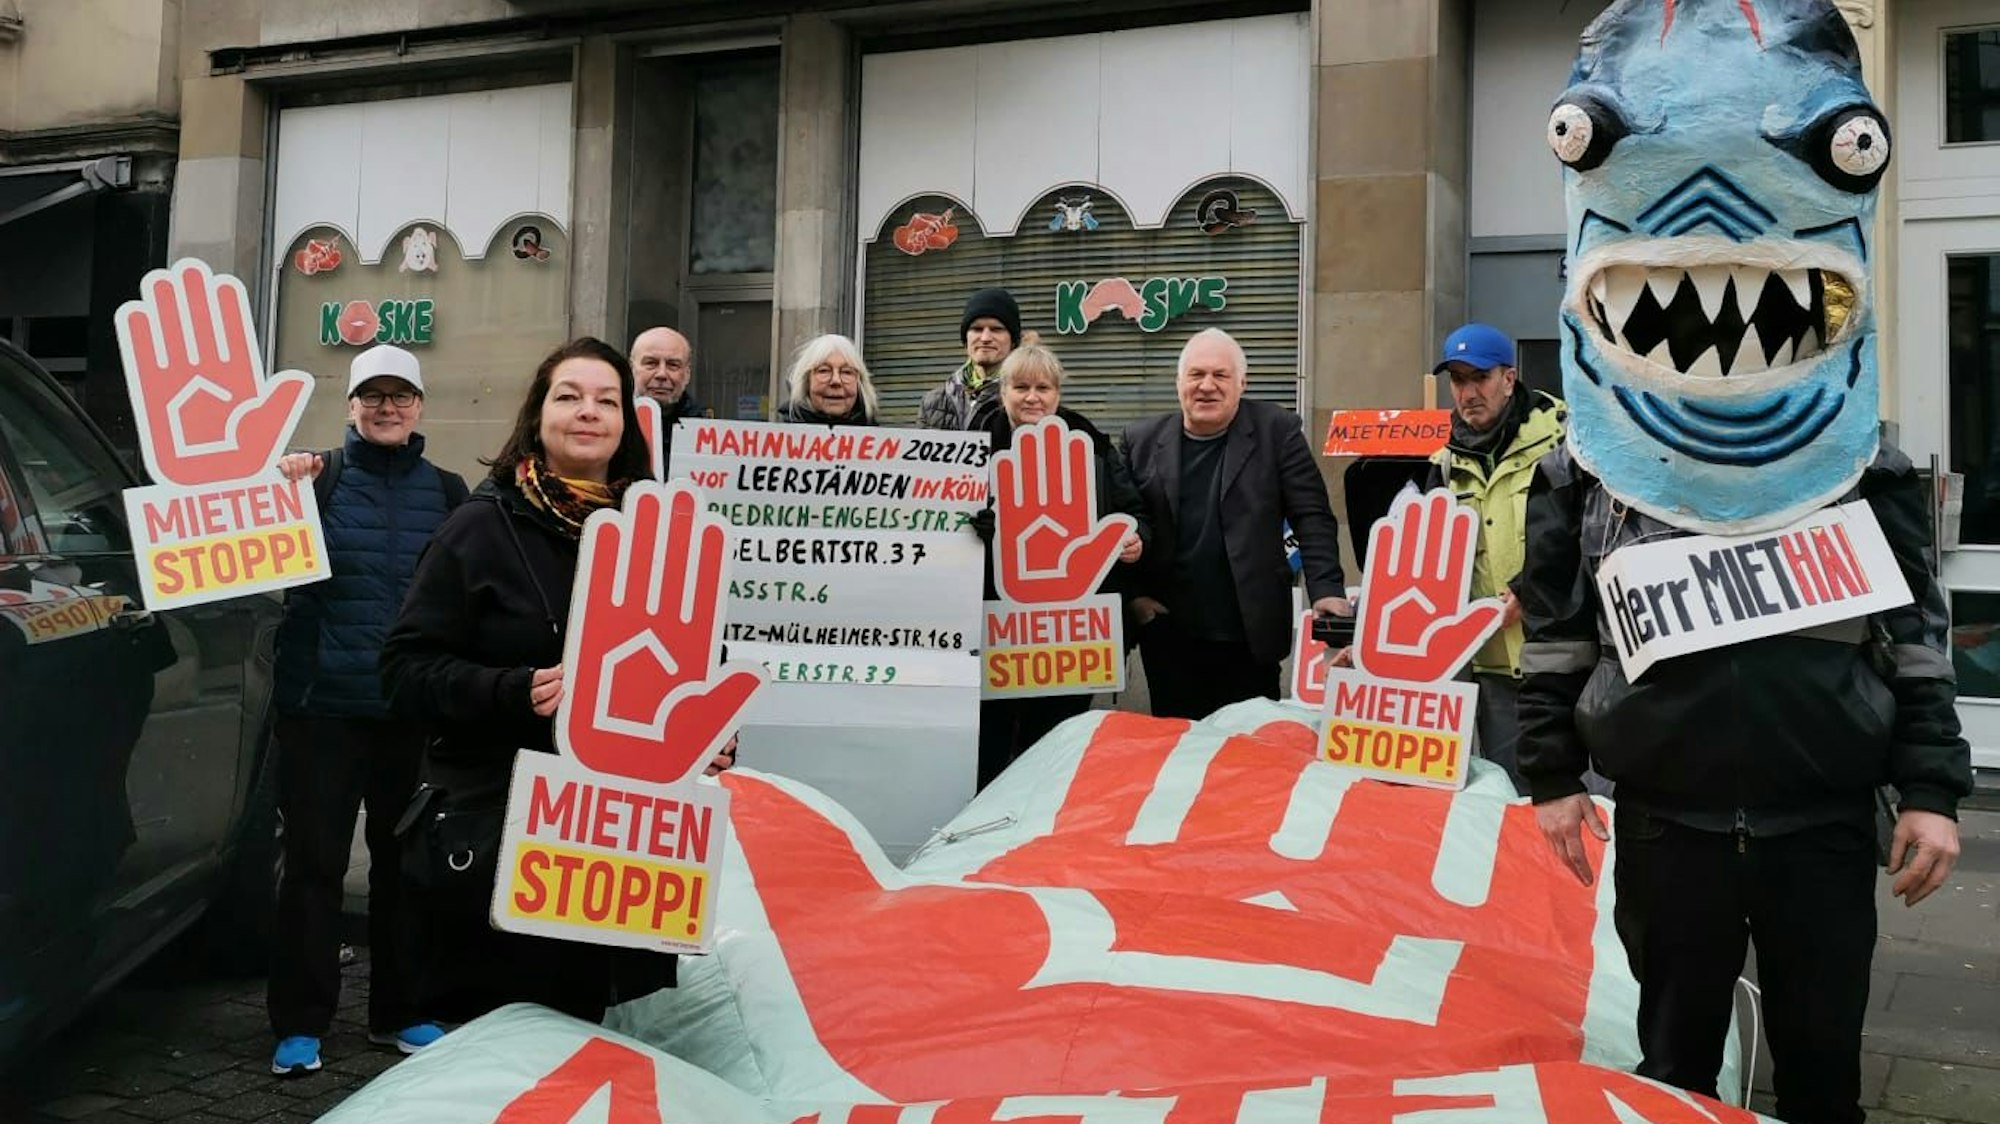 Mehrere Personen stehen mit Plakaten mit der Aufschrift „Mietenstopp!“ vor einem Haus.